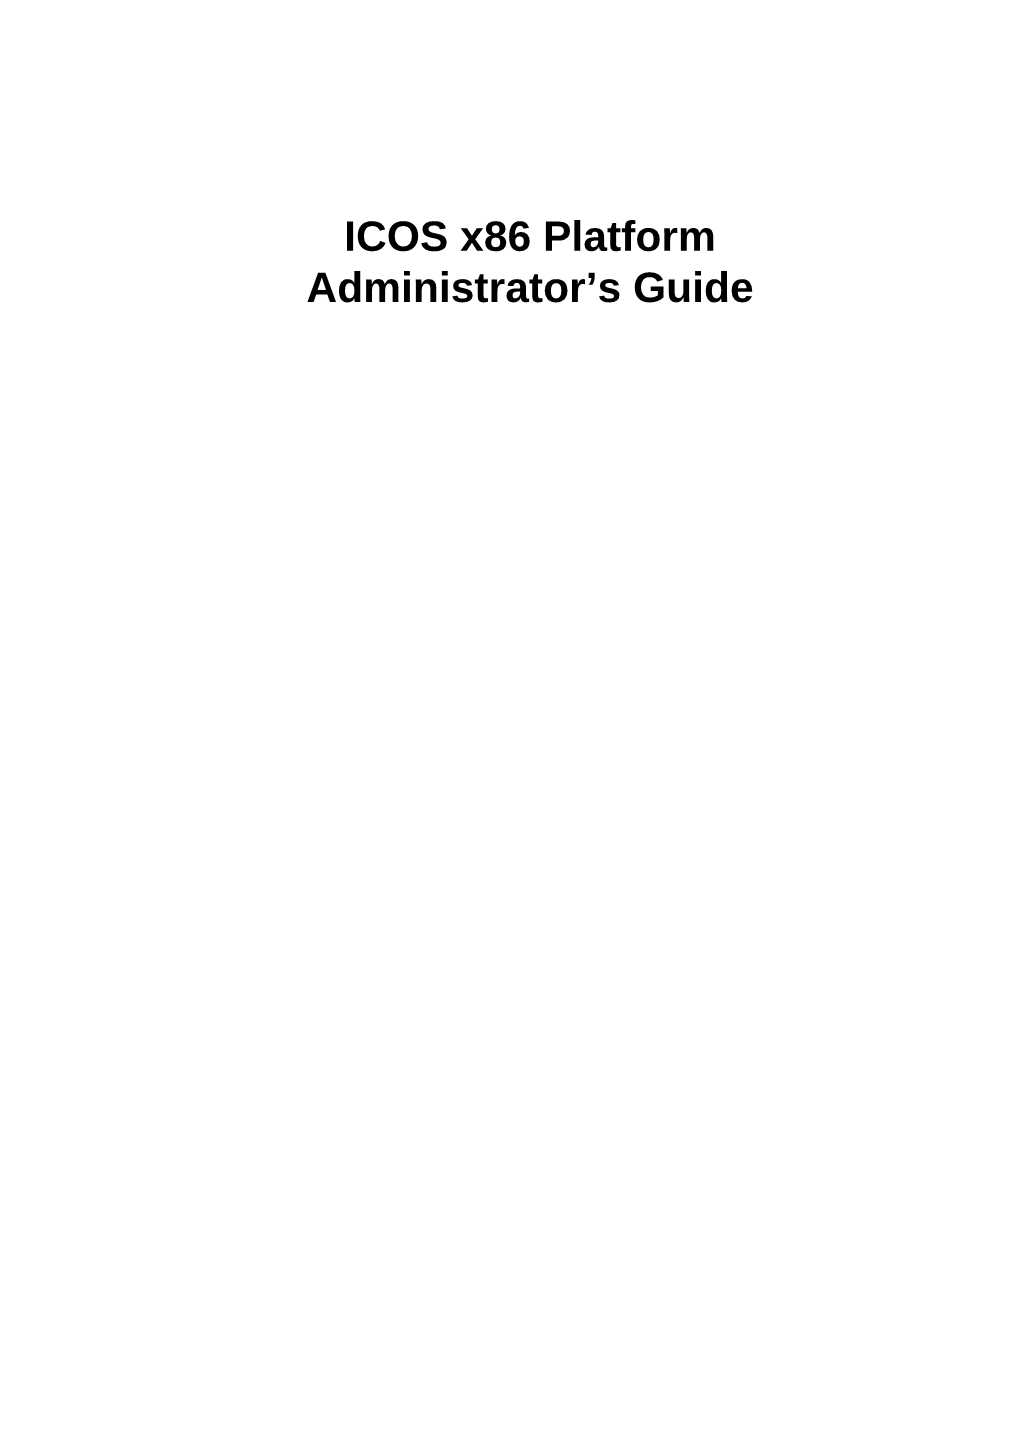 ICOS OS X86 Platform